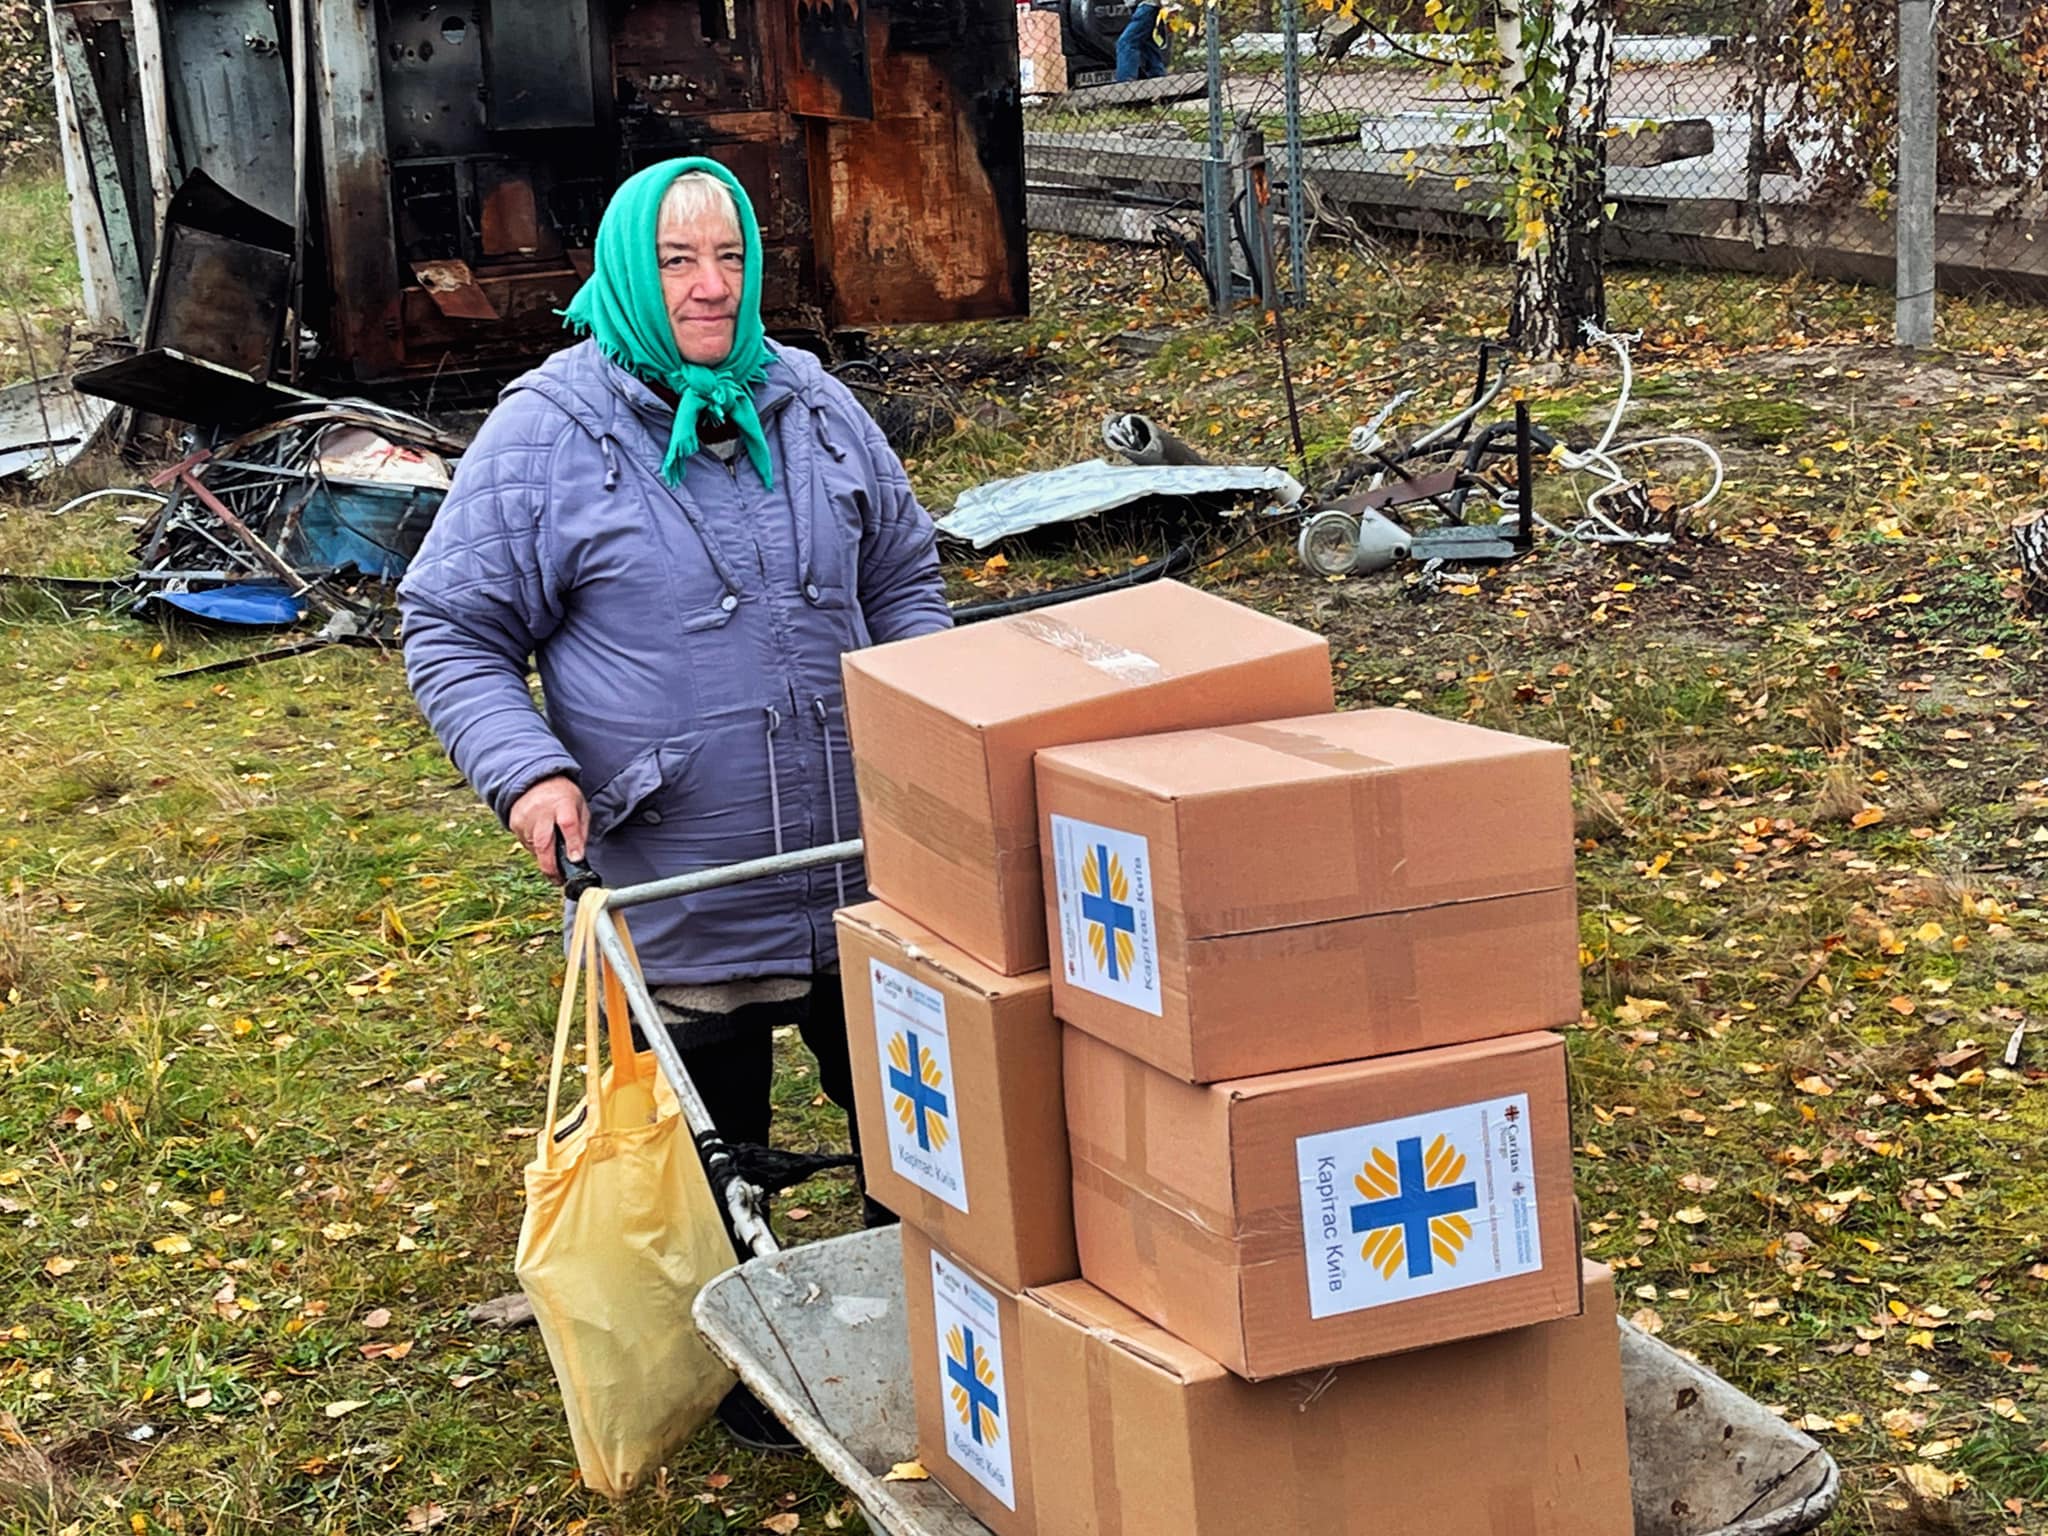 Starsza kobieta przewozi pudła z żywnością i innym sprzętem sfinansowanym dzięki wsparciu ze strony Caritas Norwegia.